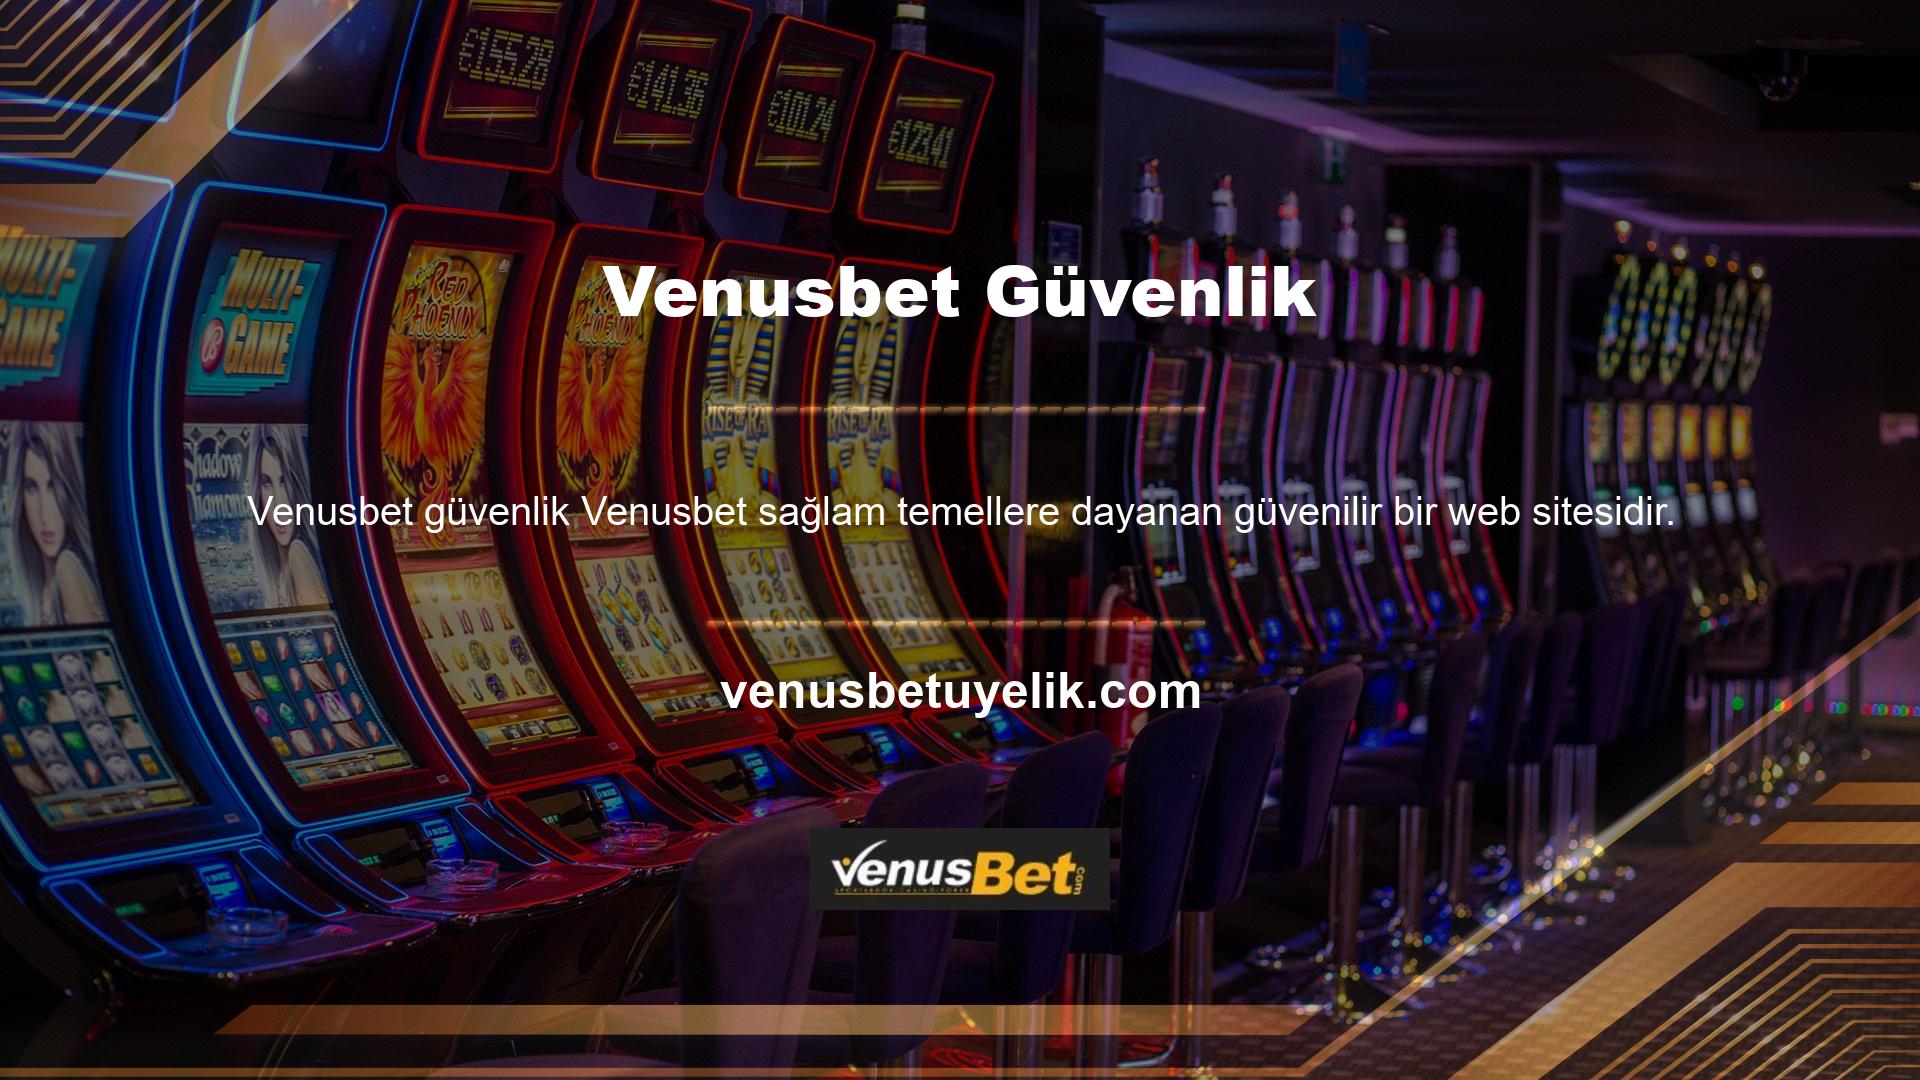 Venusbet, "Türkiye'nin en kapsamlı ve en iyi canlı bahis sitesi" sloganıyla faaliyet gösteren bir şirkettir